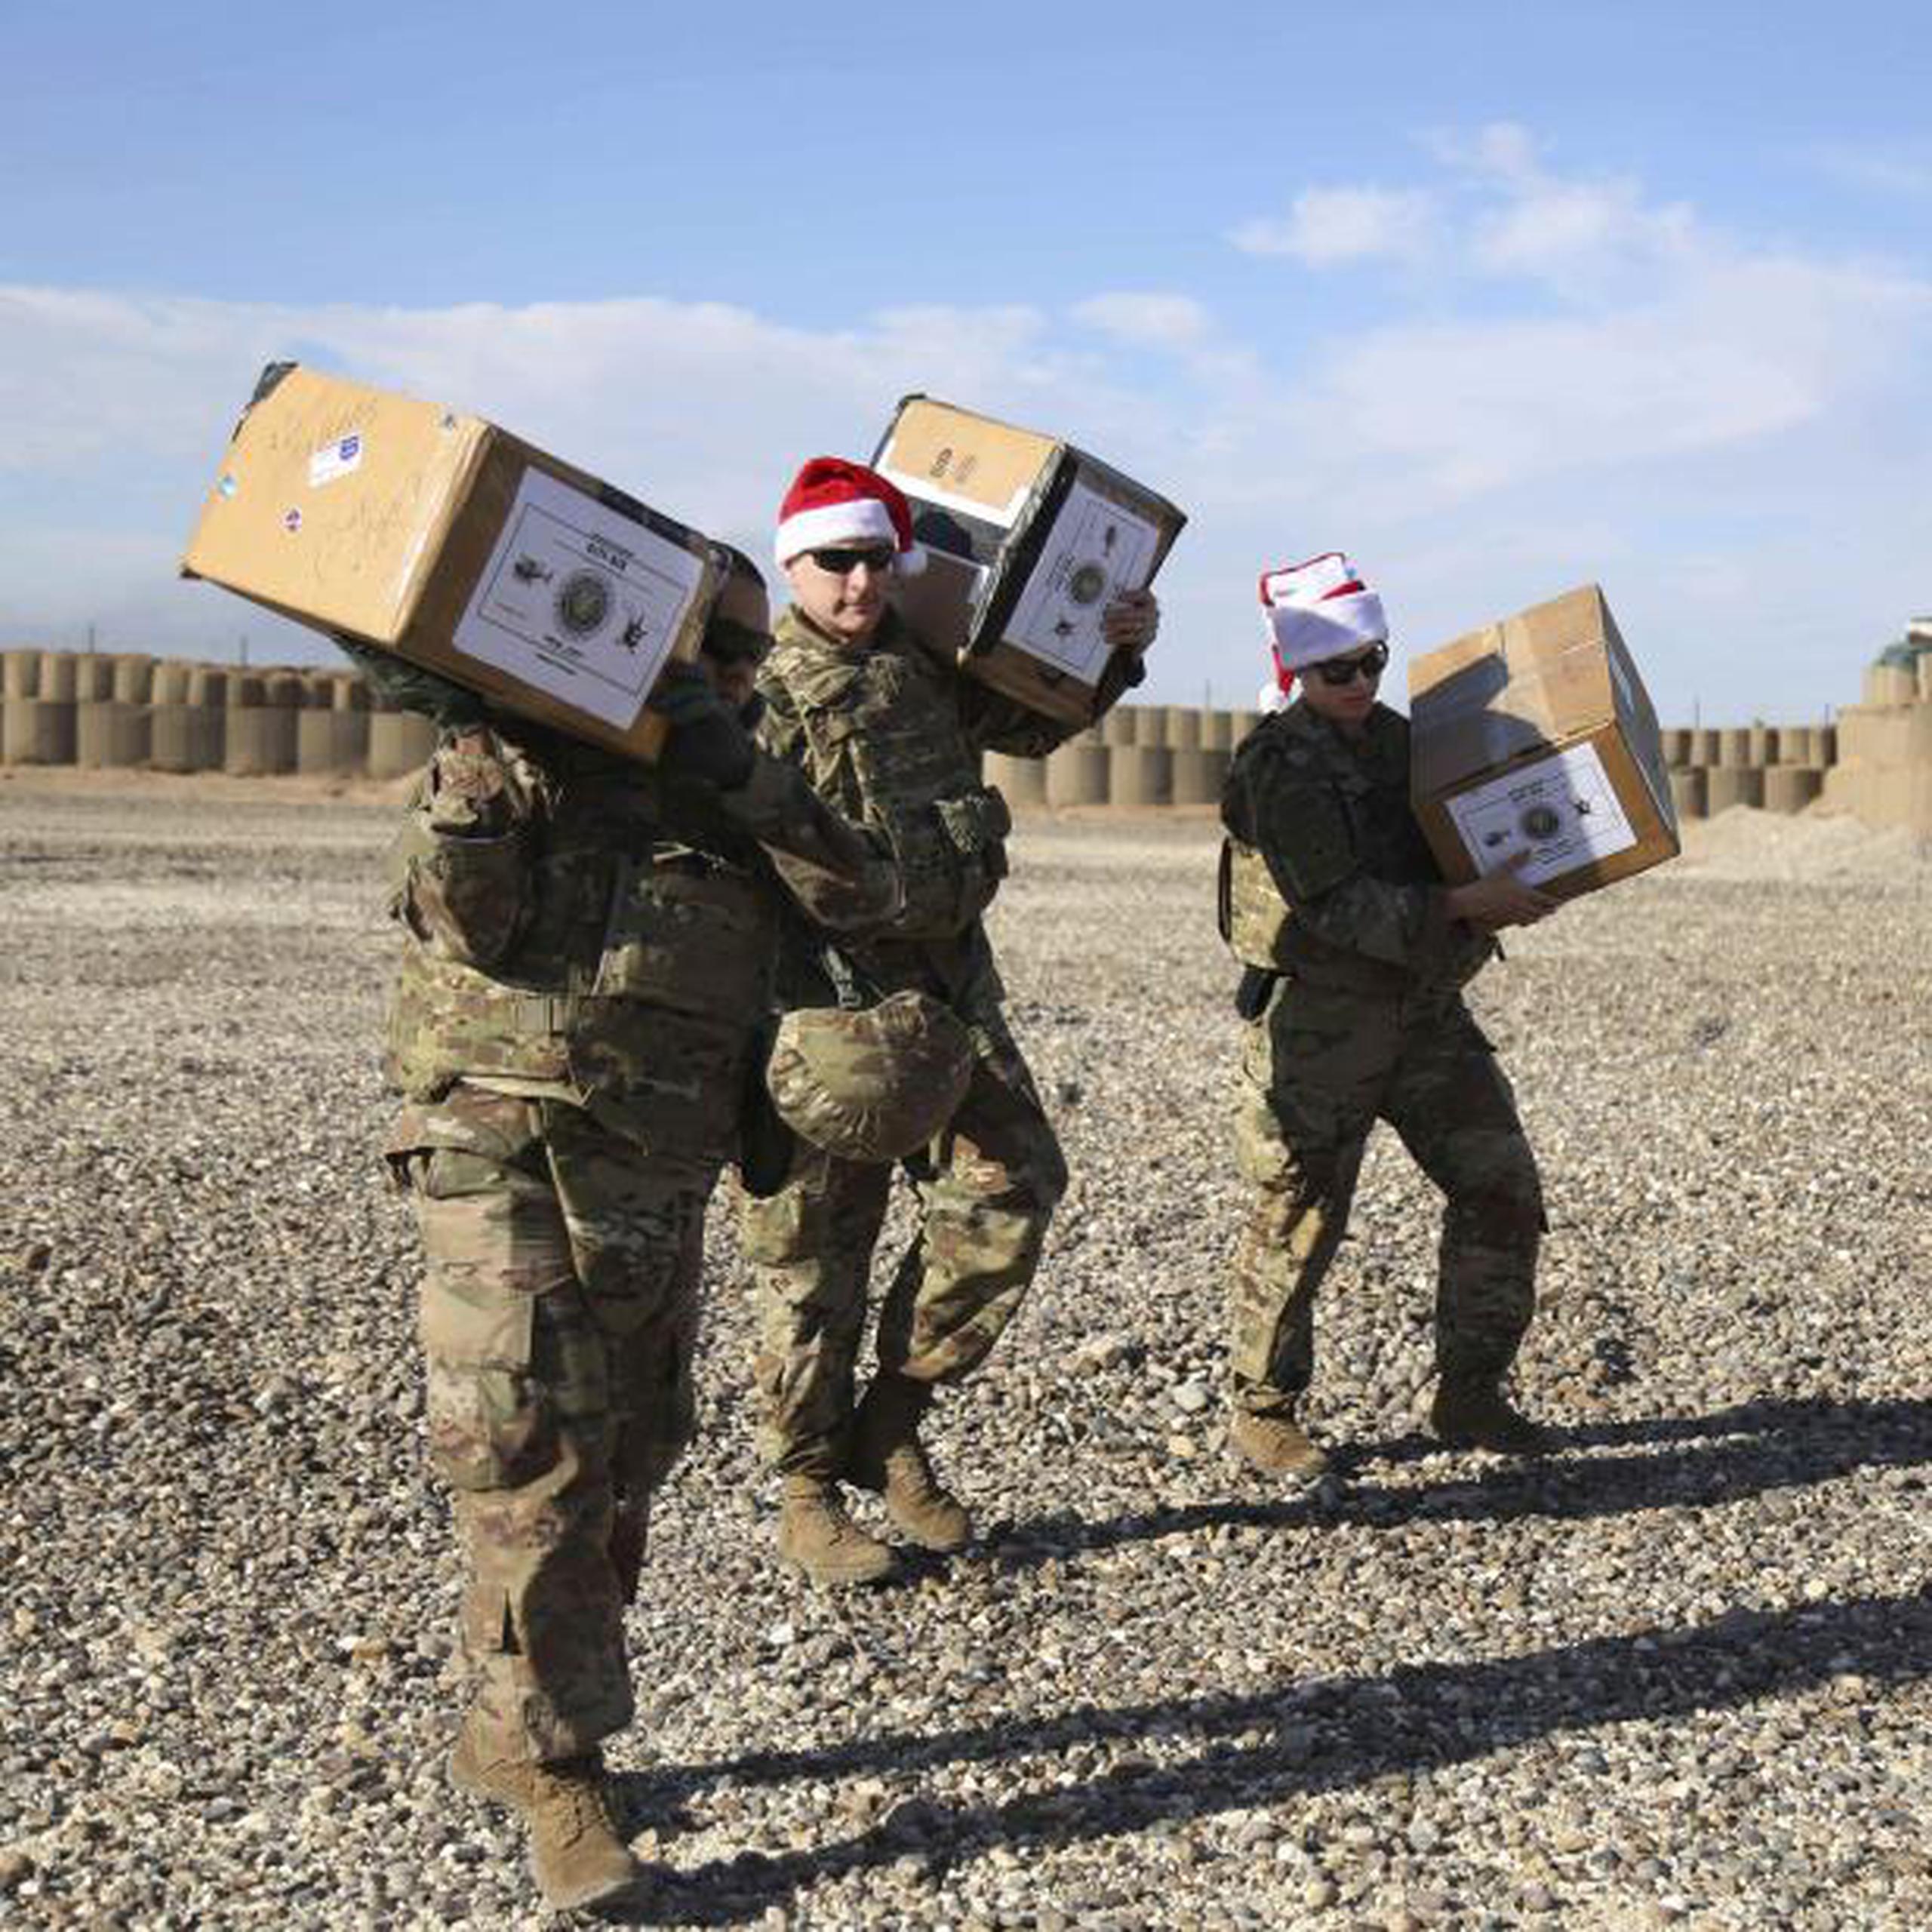 Los soldados recibieron botas navideñas llenas de dulces, artículos de aseo personal y otros obsequios. (AP / Farid Abdul-Wahid)